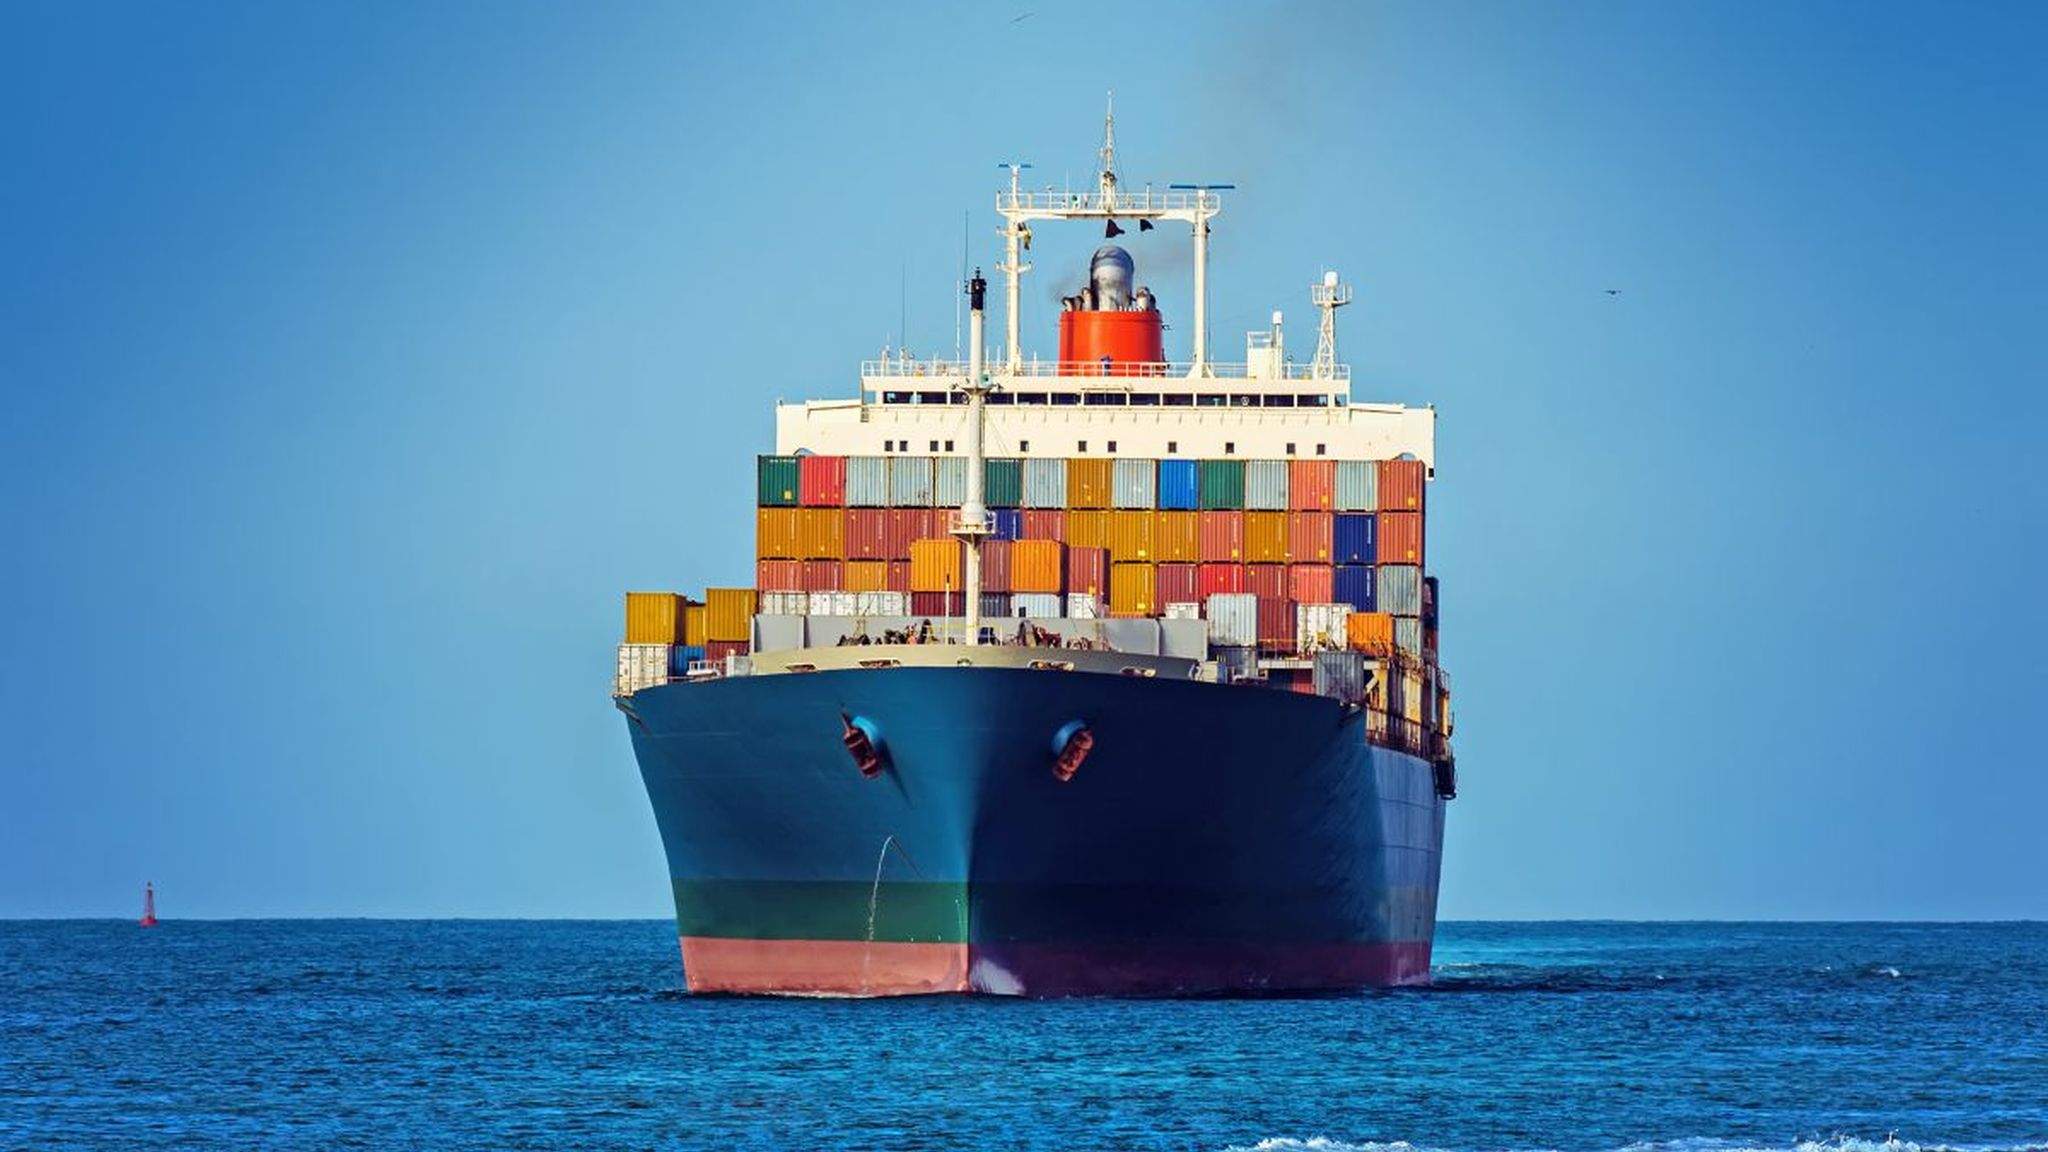 SEA FREIGHT UAE - Sea freight Dubai - Sea cargo in Dubai